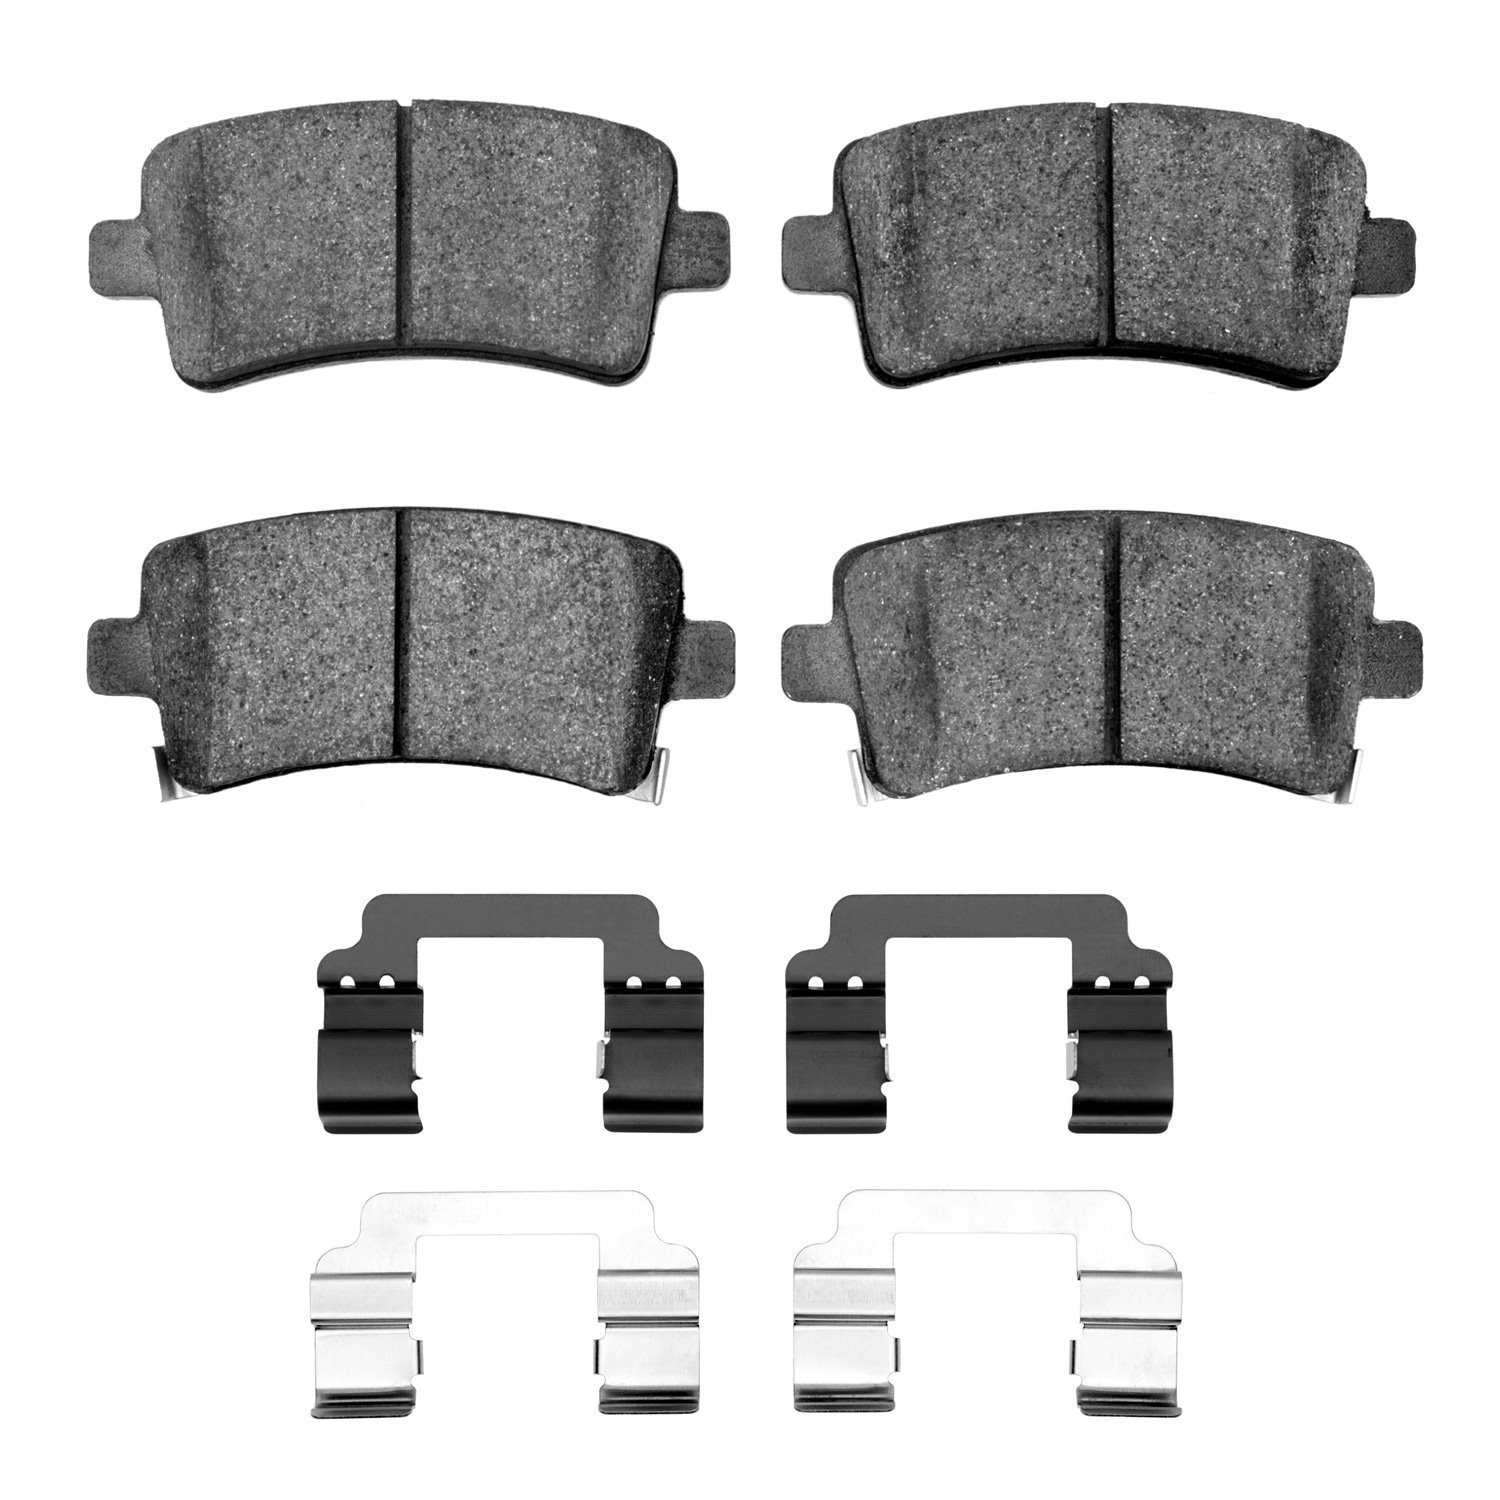 1310-1430-01 3000-Series Ceramic Brake Pads & Hardware Kit, 2010-2020 GM, Position: Rear